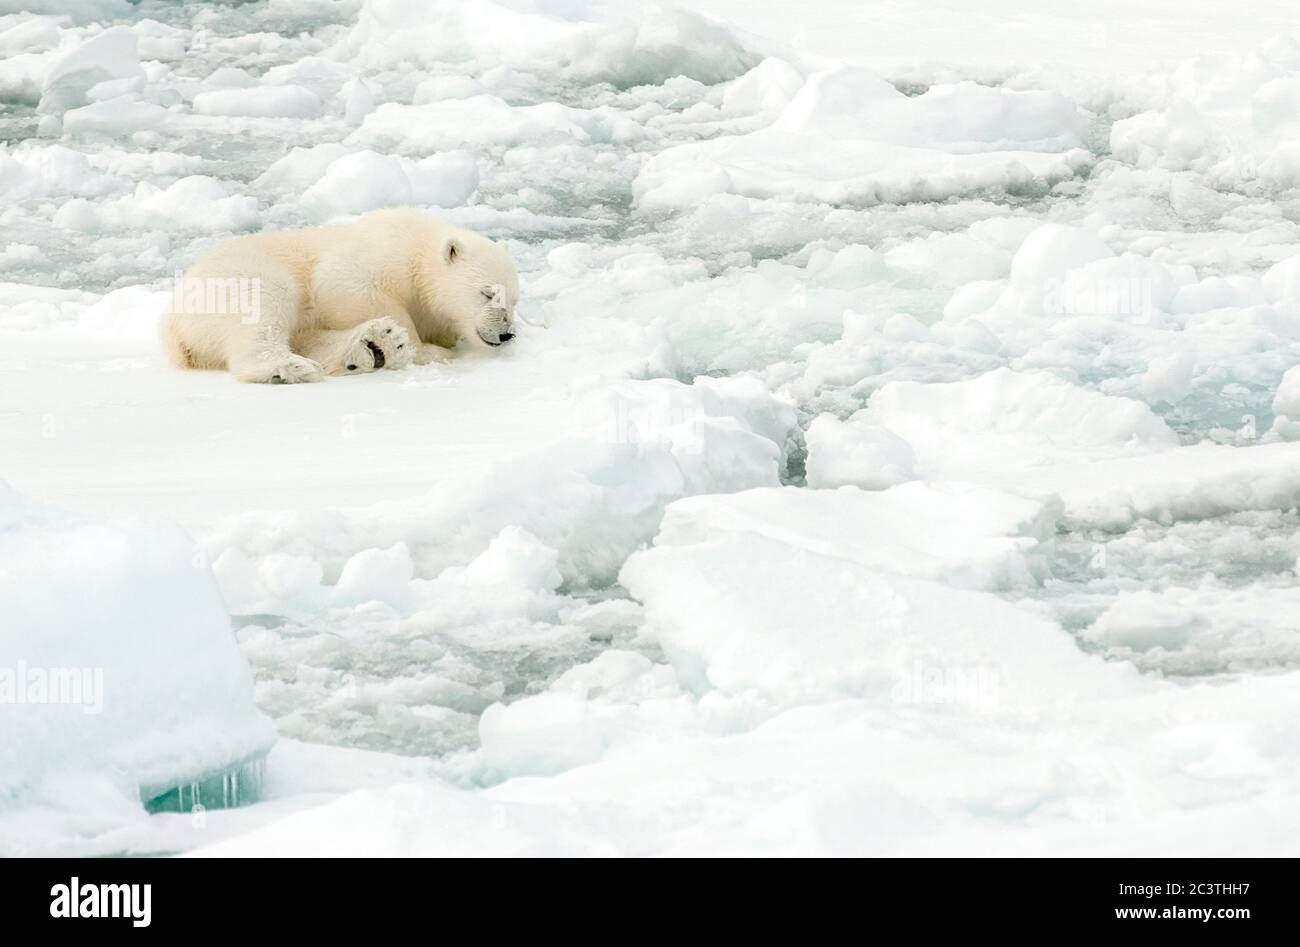 Ours polaire (Ursus maritimus), ourson polaire dormant sur la banquise, Norvège, Svalbard Banque D'Images